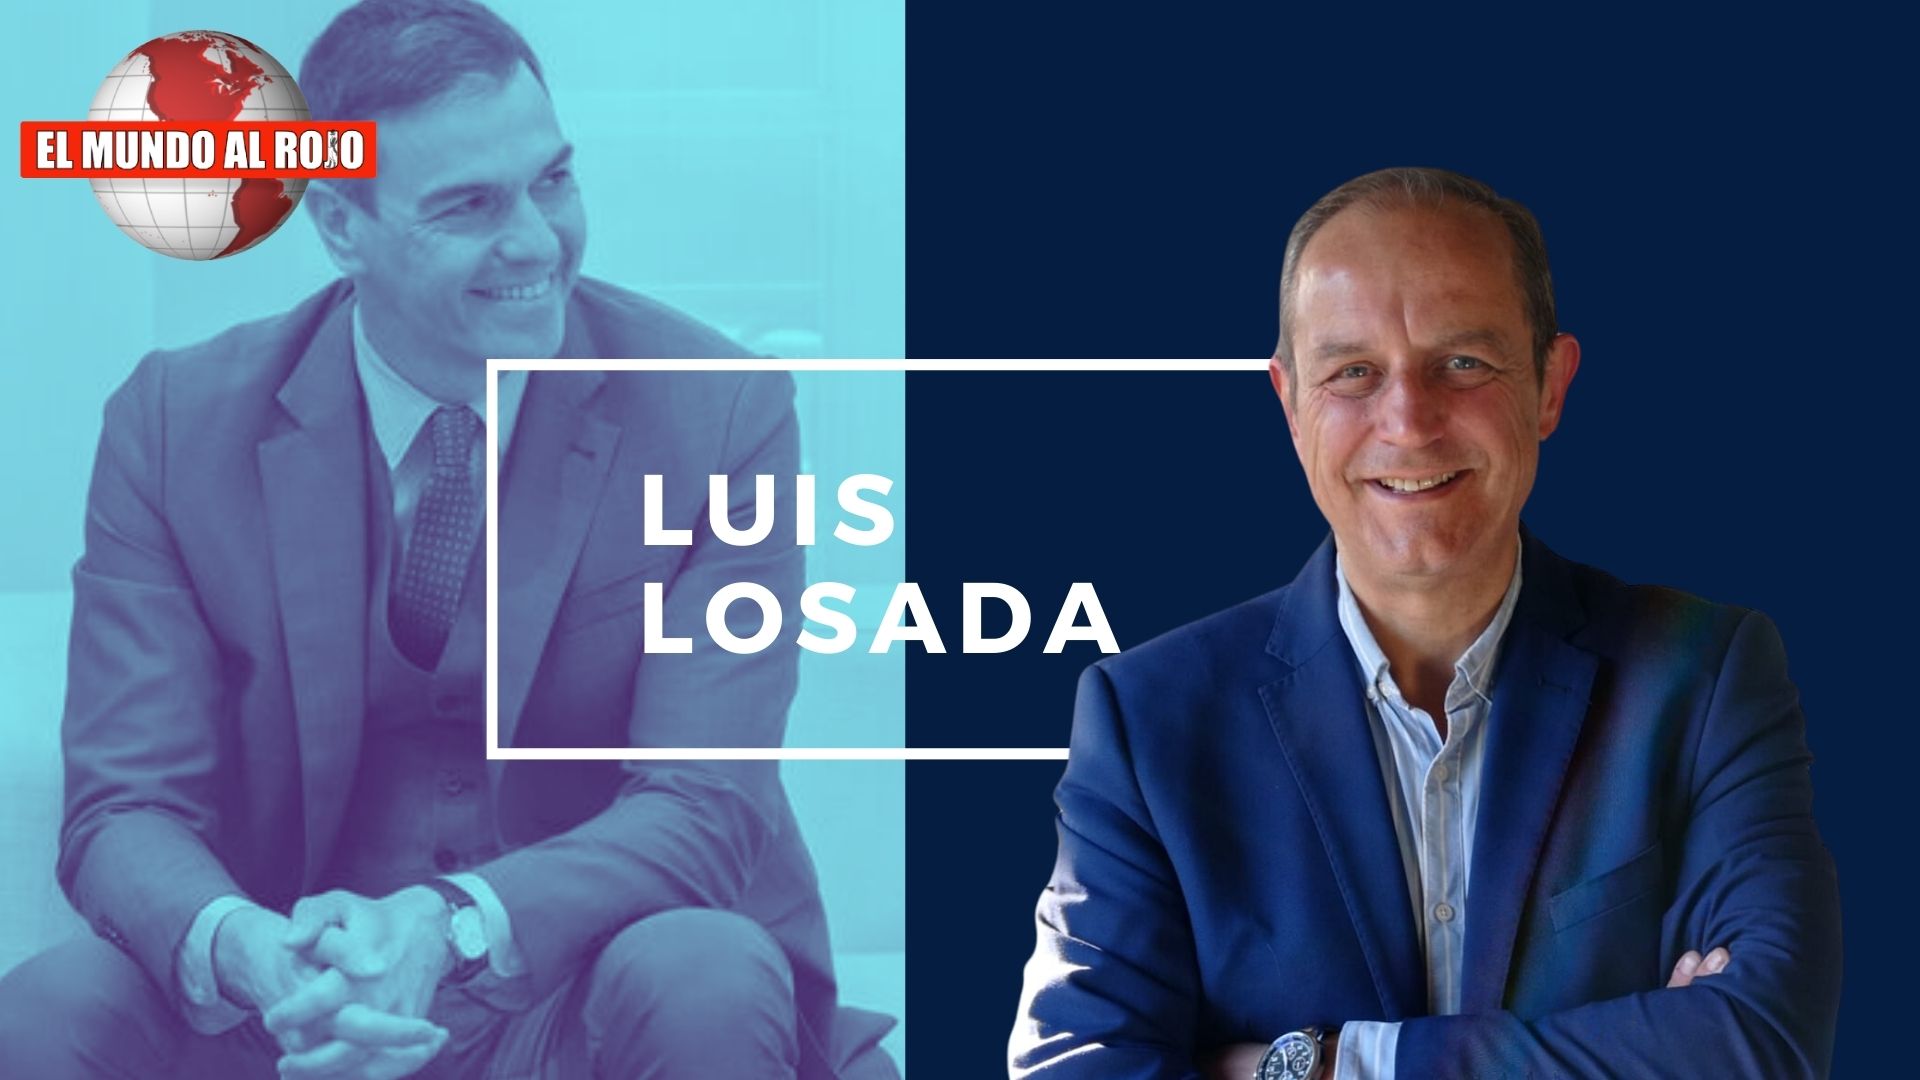 LUIS LOSADA, SÁNCHEZ NO DEJARÁ EL PODER HASTA QUE LA JUSTICIA LE PONGA EN SU SITIO